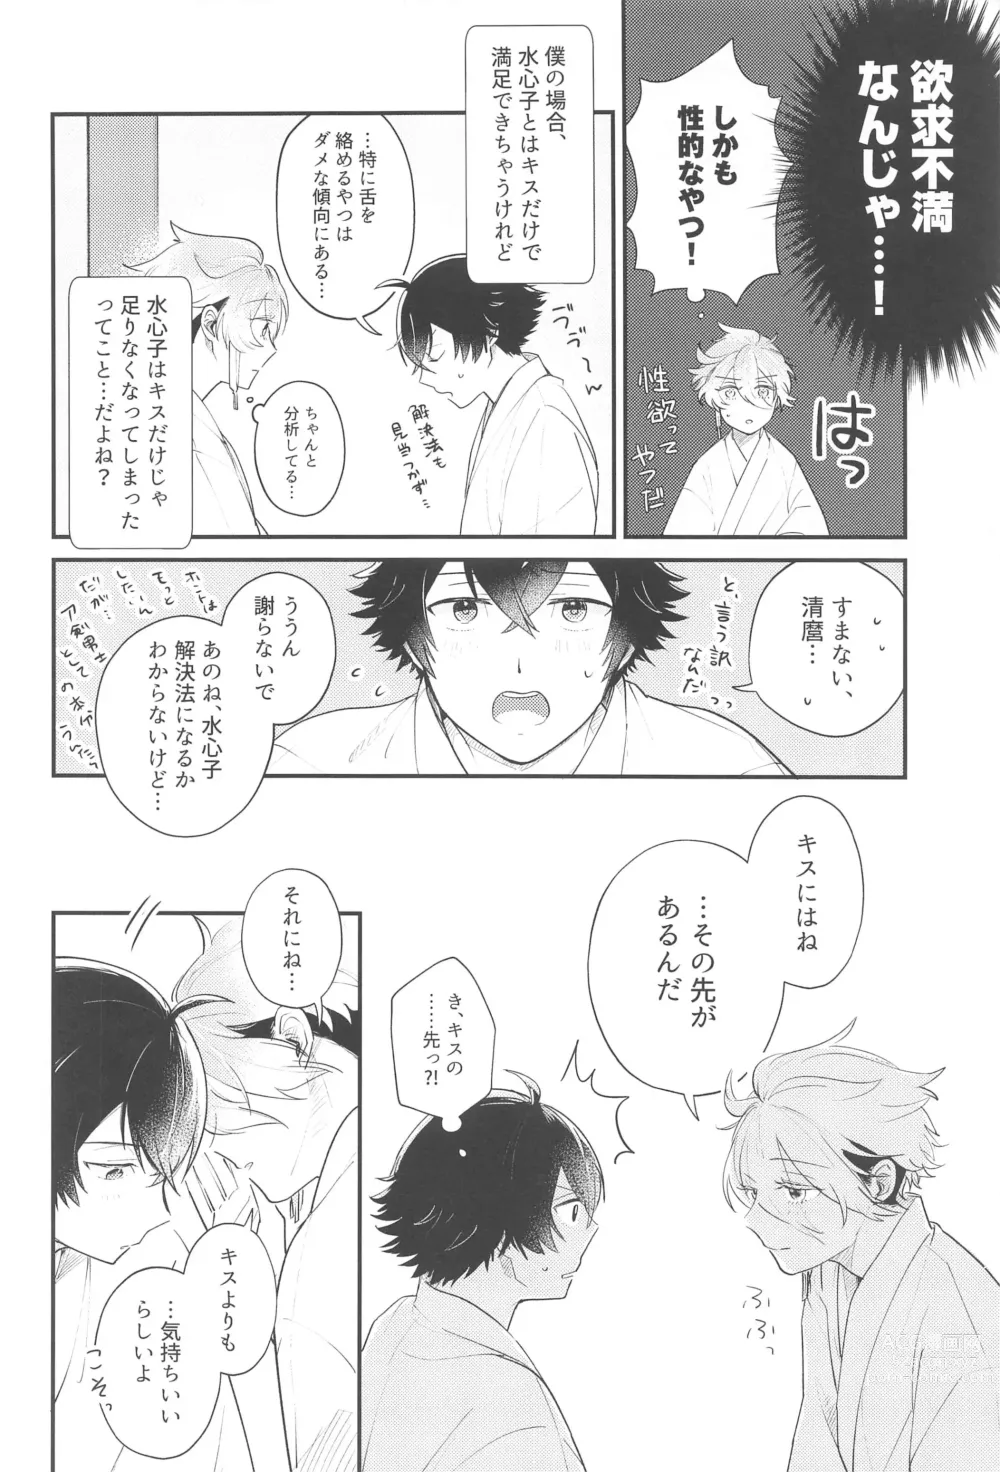 Page 5 of doujinshi Sonosaki wa Ariarito